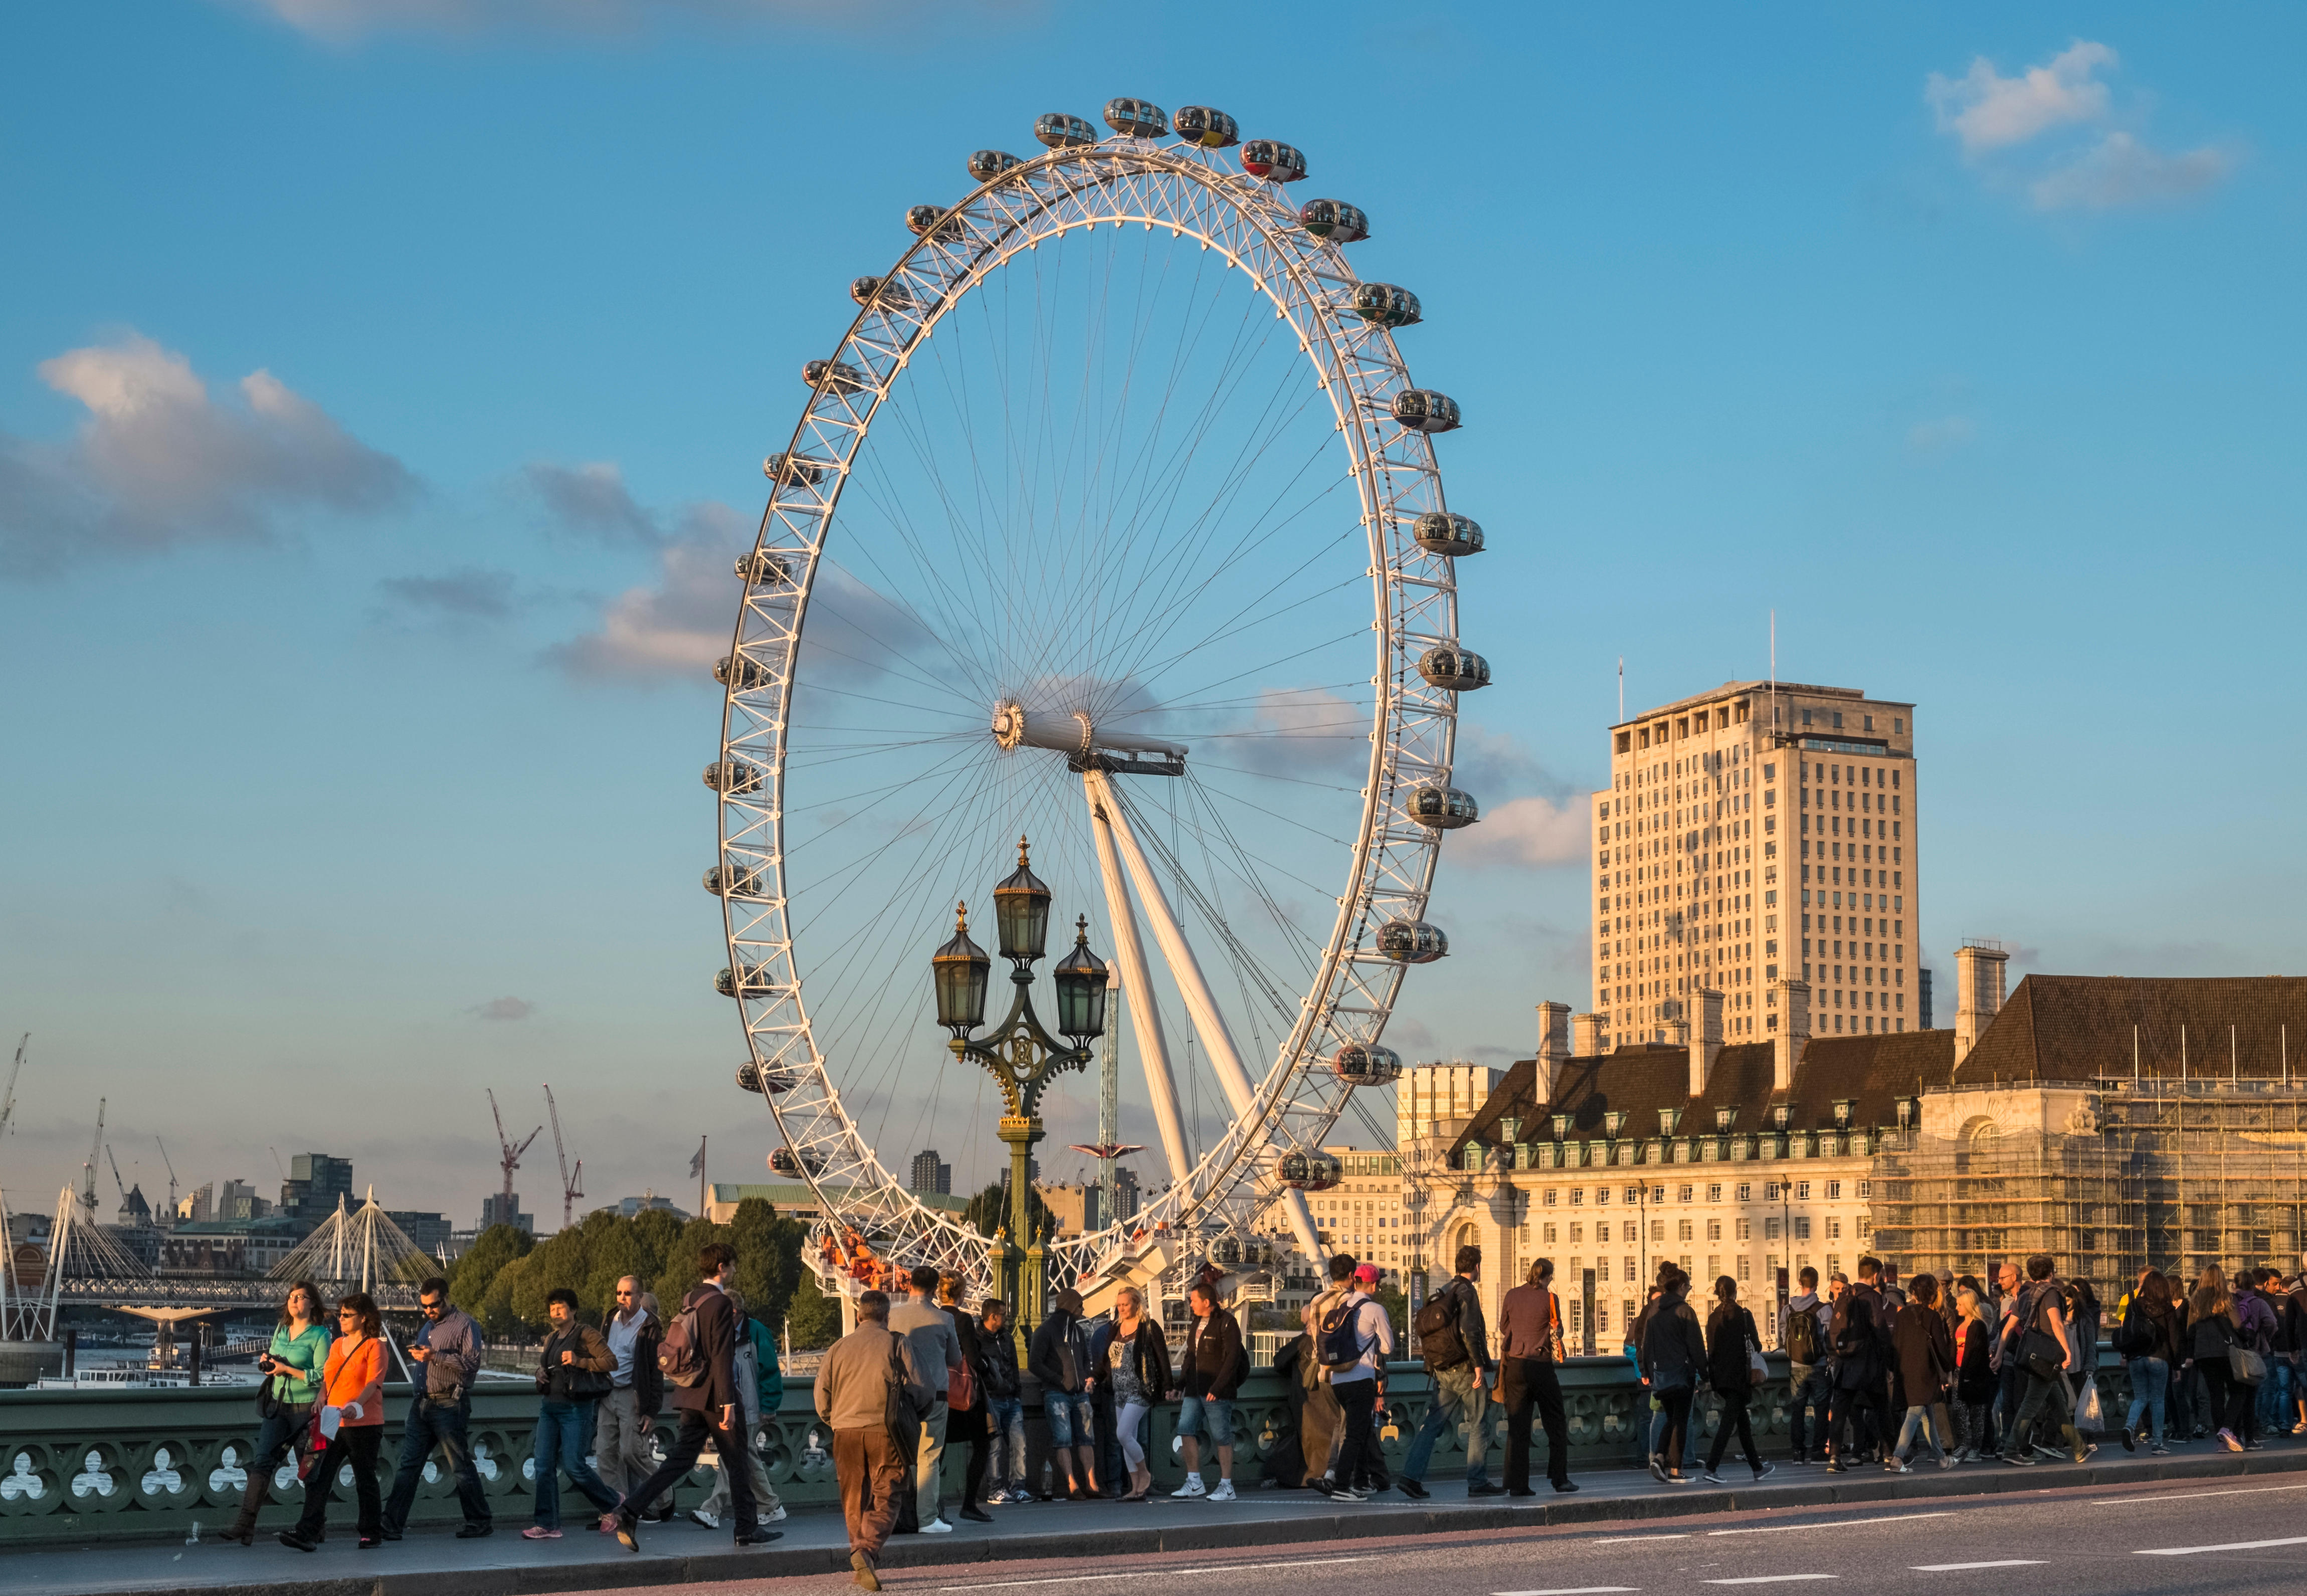 L'attraction est l'un des monuments les plus emblématiques de Londres